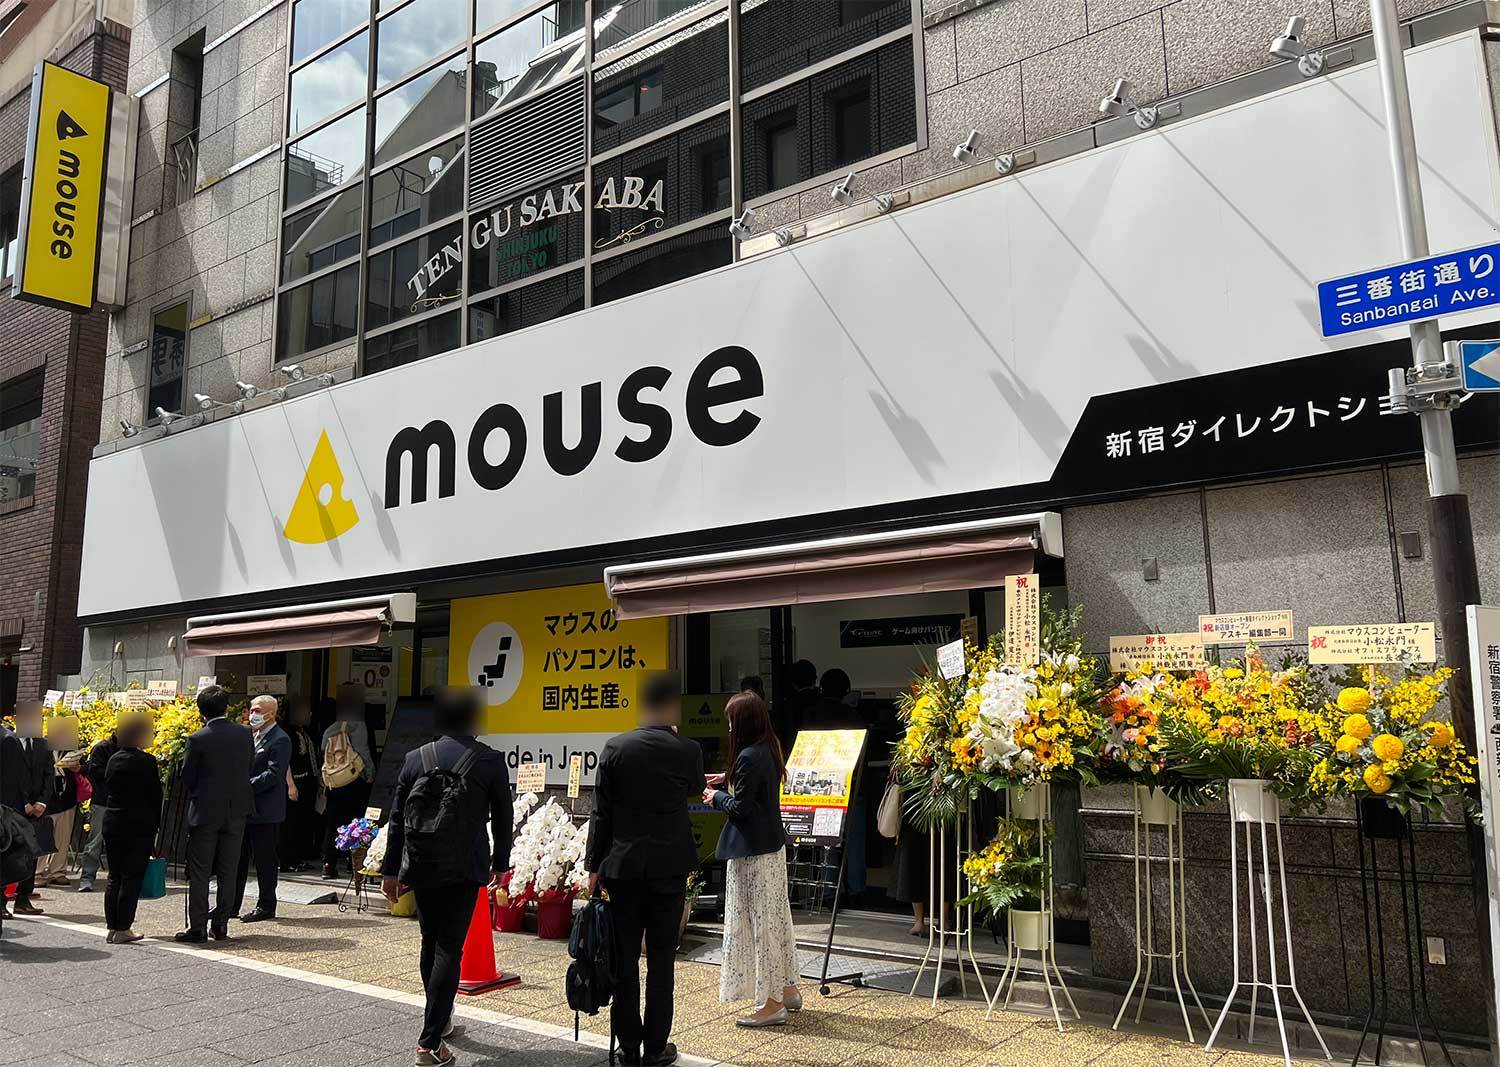 新宿西口駅の前”に「マウスコンピューター 新宿ダイレクトショップ」が